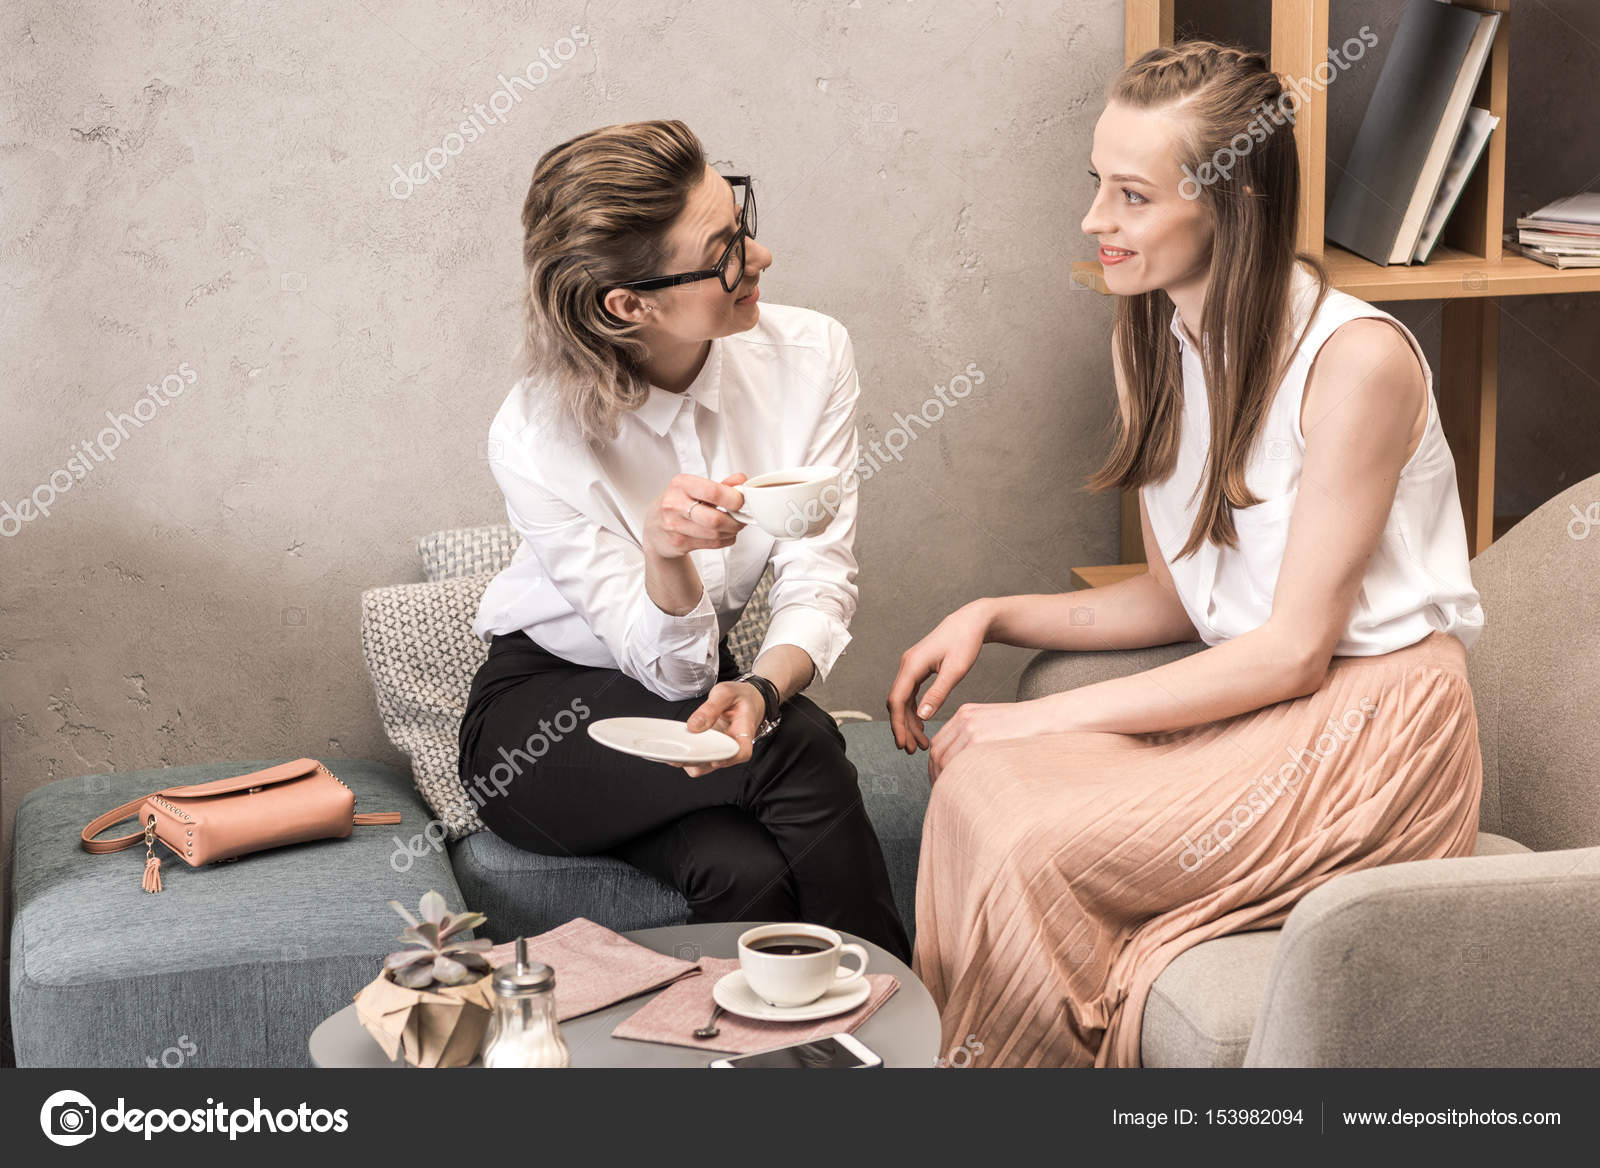 Лесбиянки пьют кофе стоковое фото ©DmitryPoch 153982094